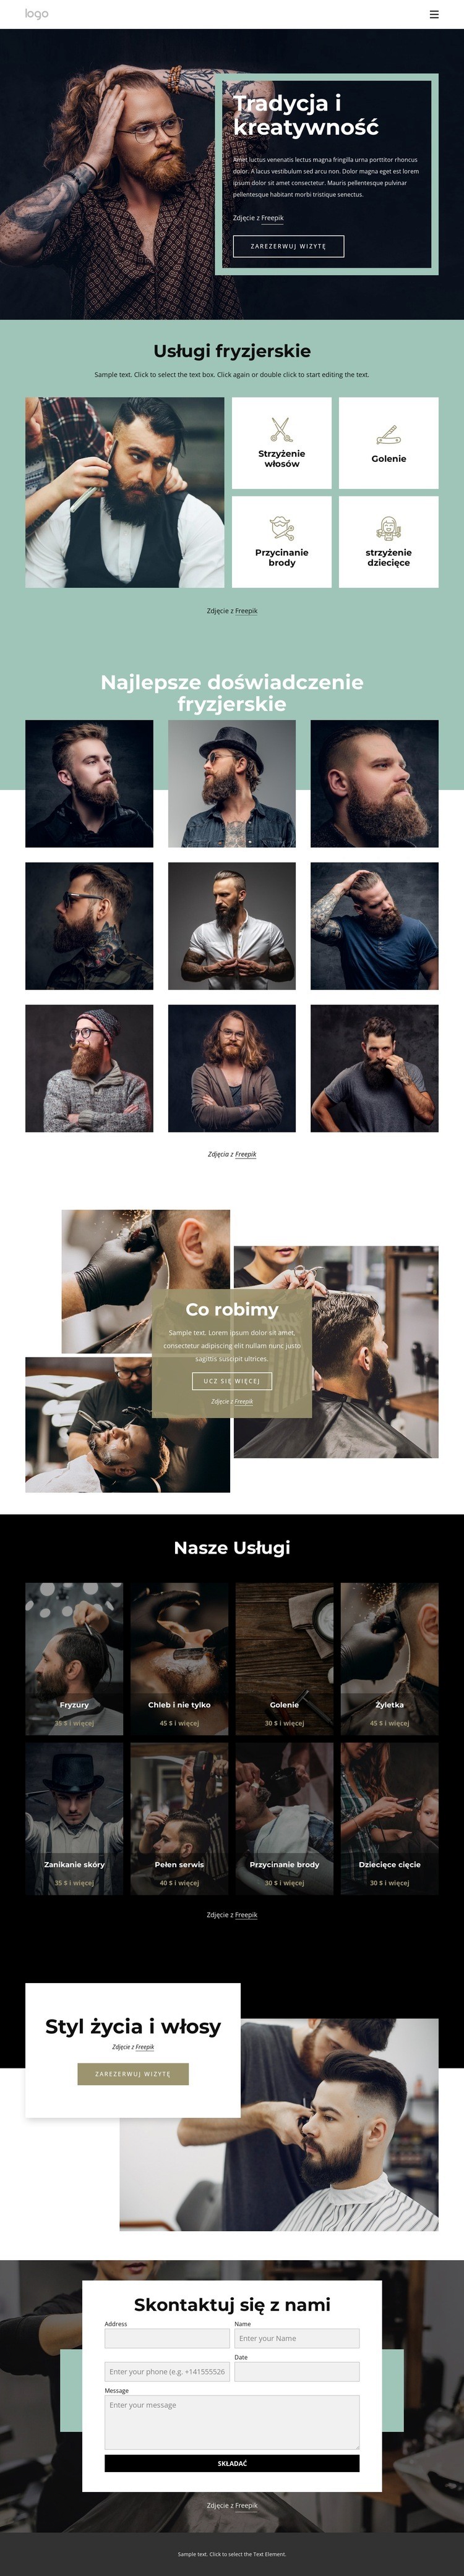 Ogólnodostępny salon fryzjerski Szablon